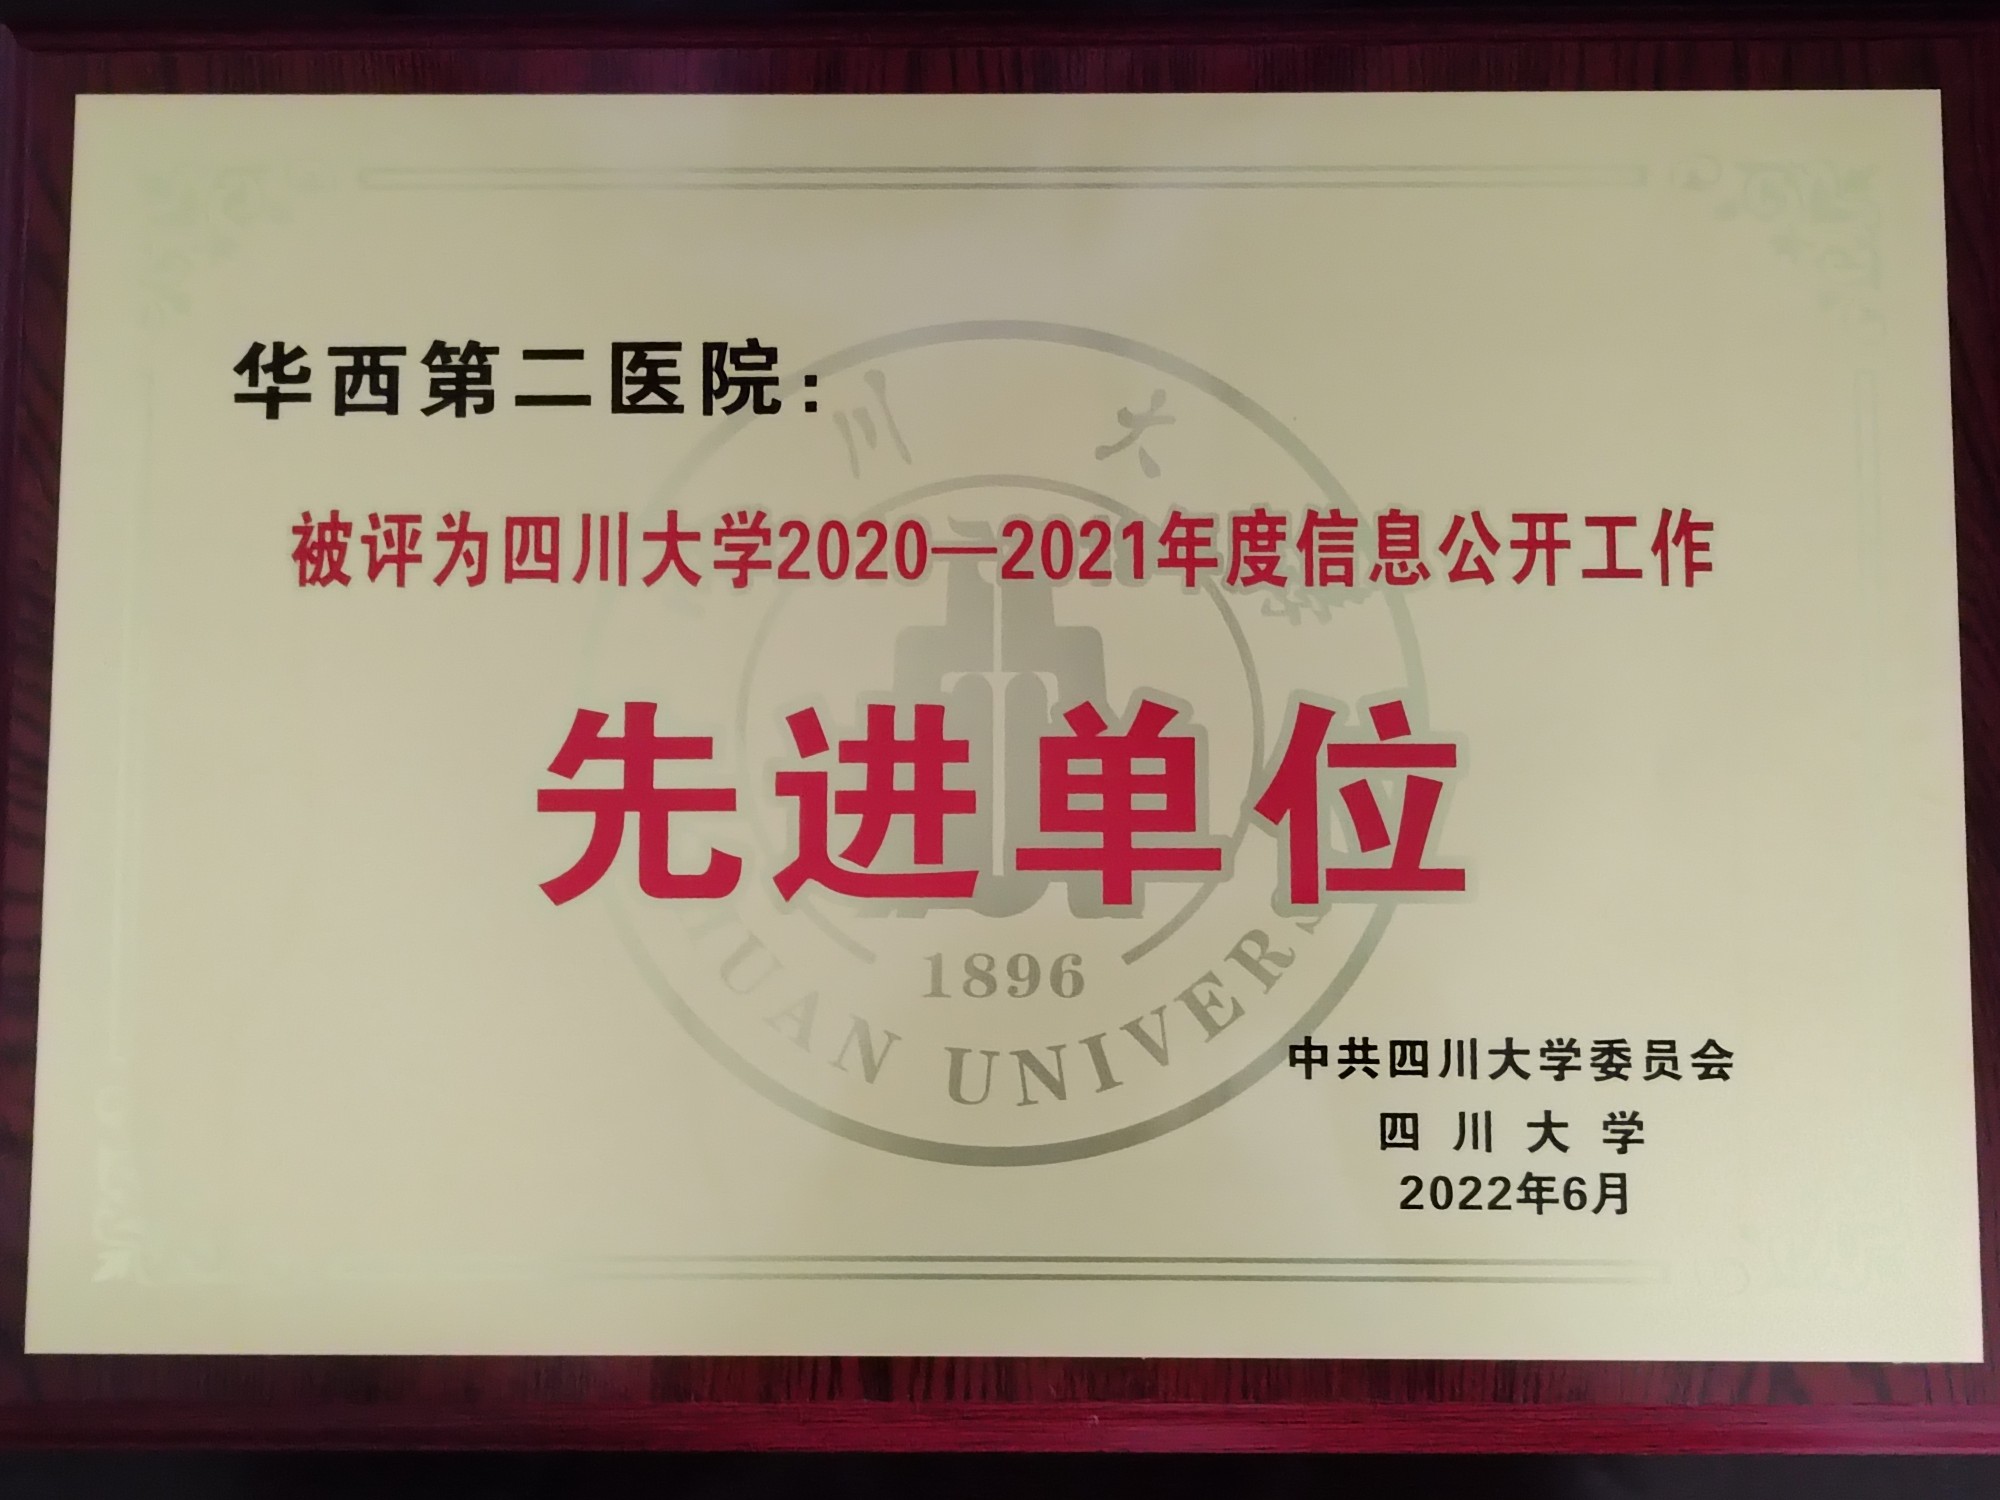 我院荣获四川大学2020—2021年度信息公开工作先进单位称号